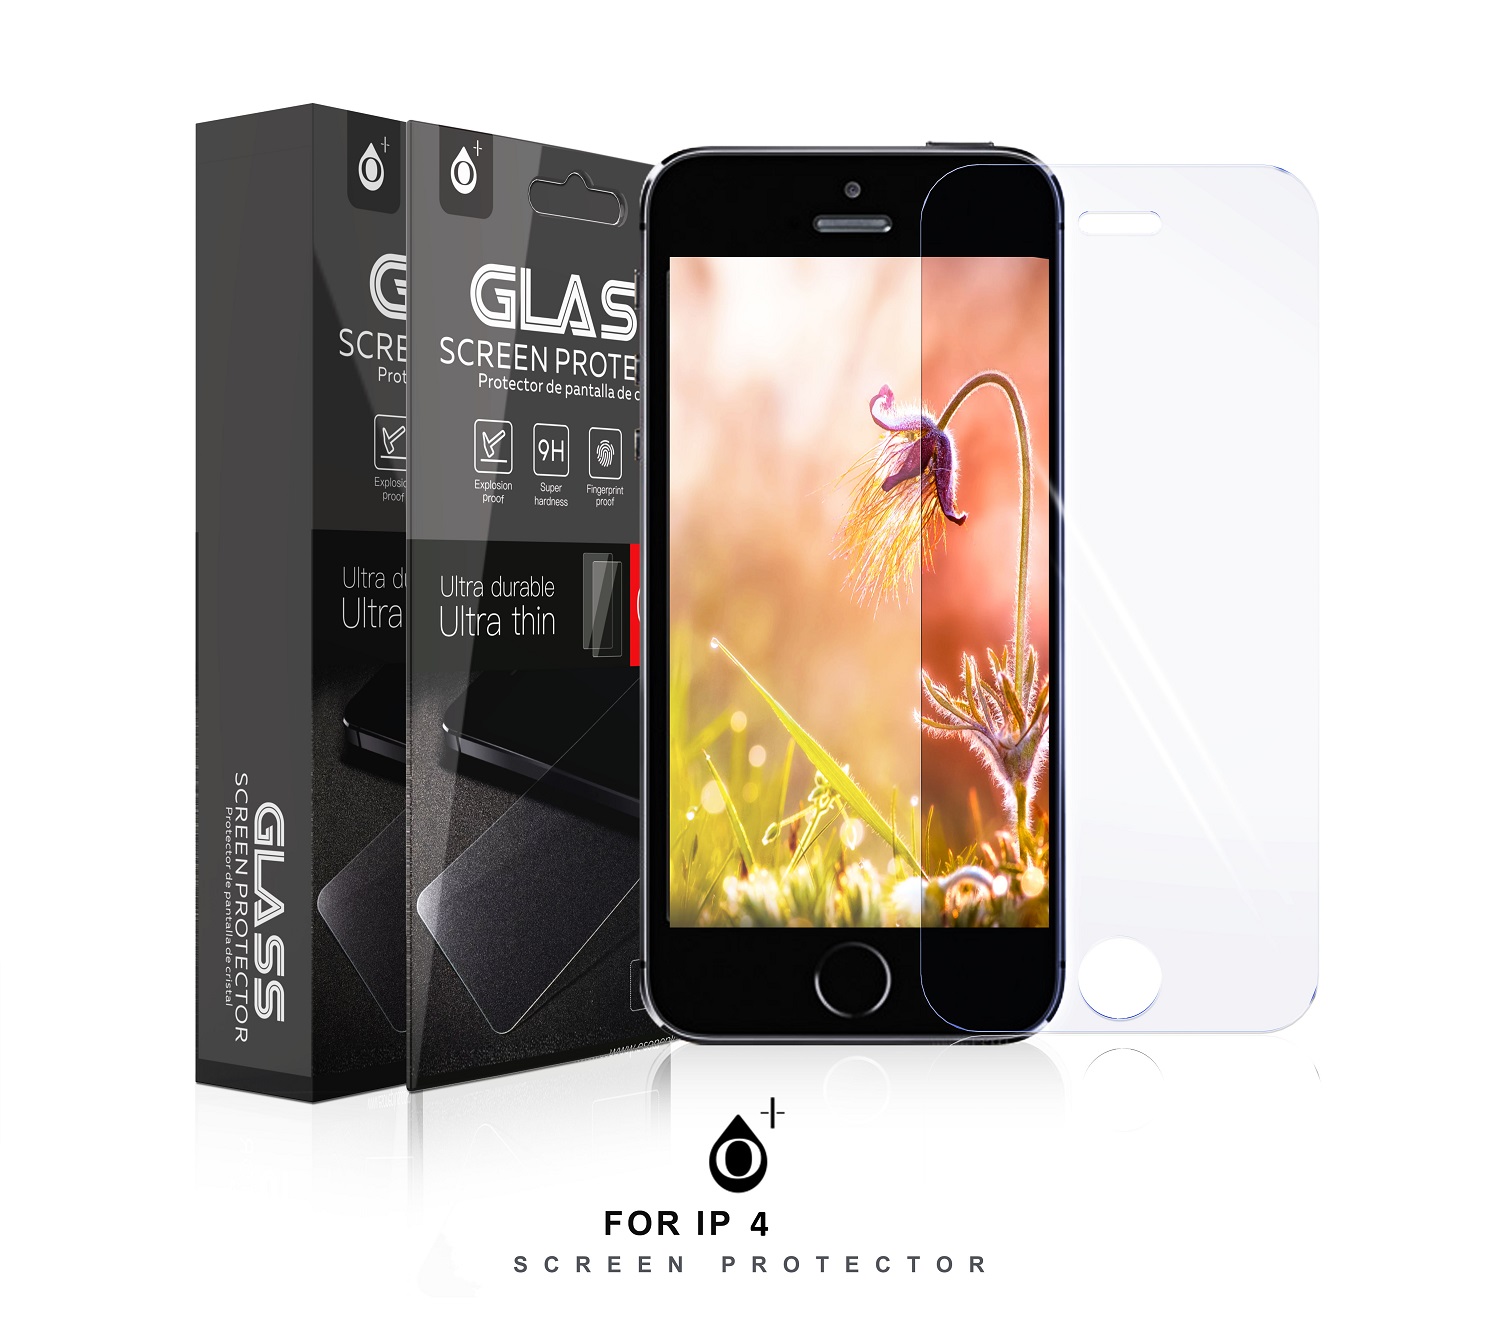 24010019 IP 4GS-Protector de Pantalla Cristal para iPhone 4GS